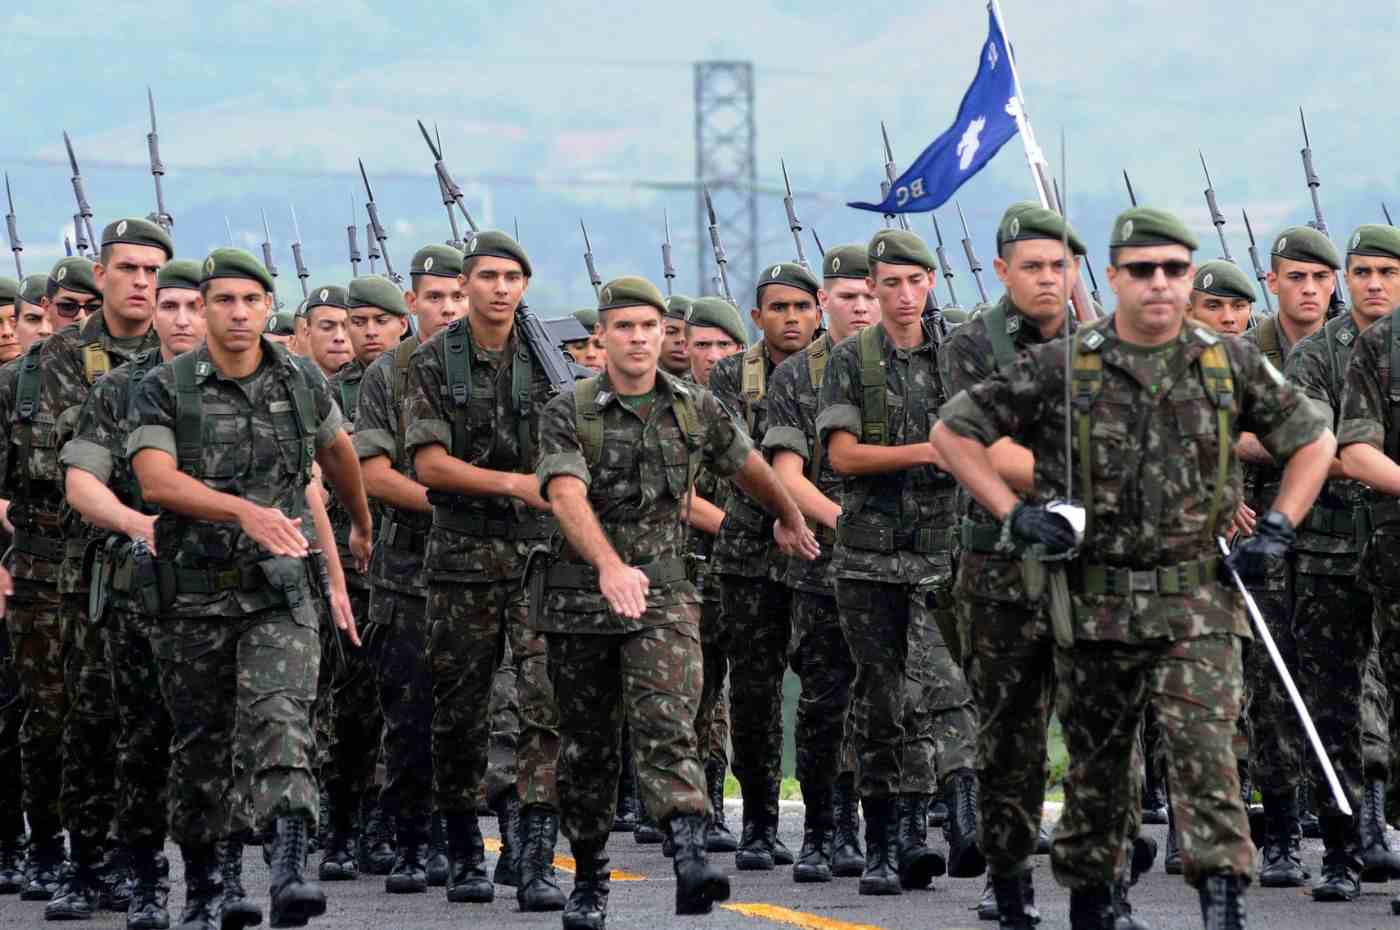 Soldados brasileiros marchando